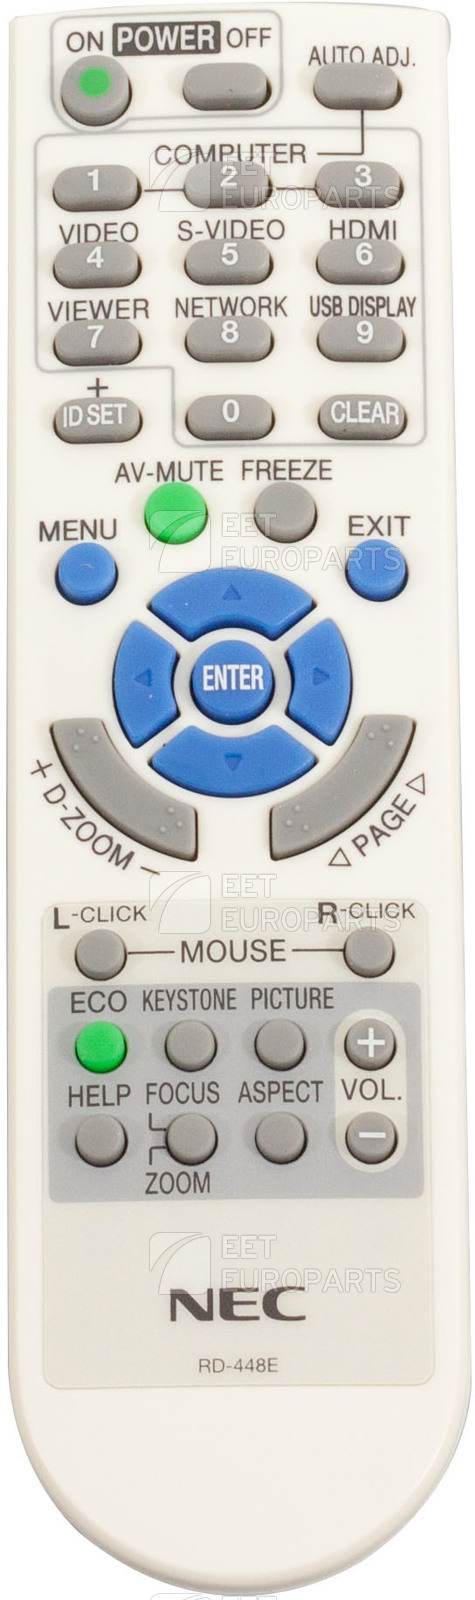 NEC Remote Controller RD-448E  RD-448E pults